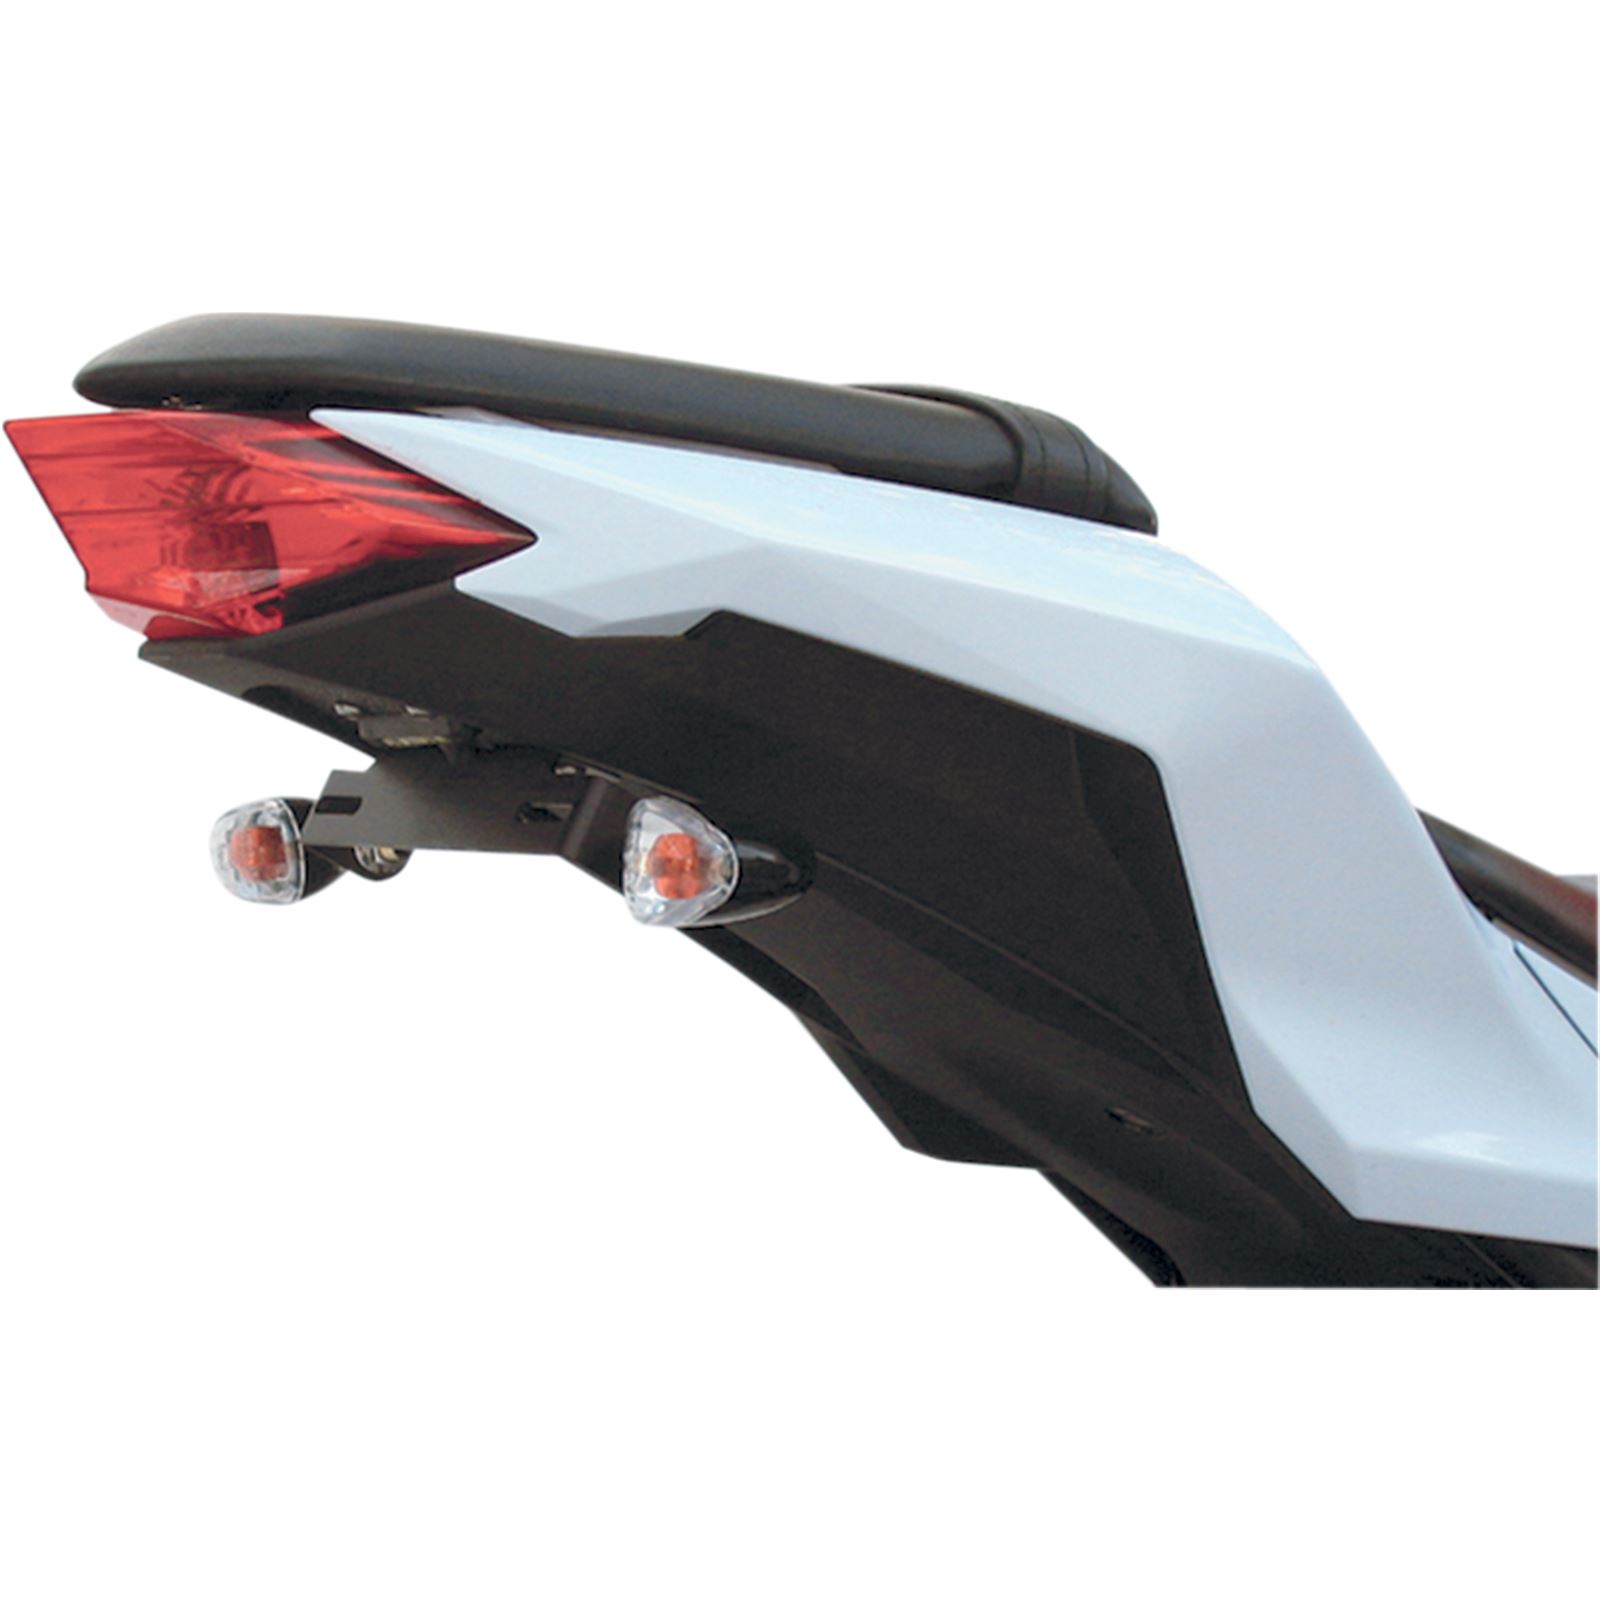 Targa Tail Kit with Signals - Ninja 300 '13-'16